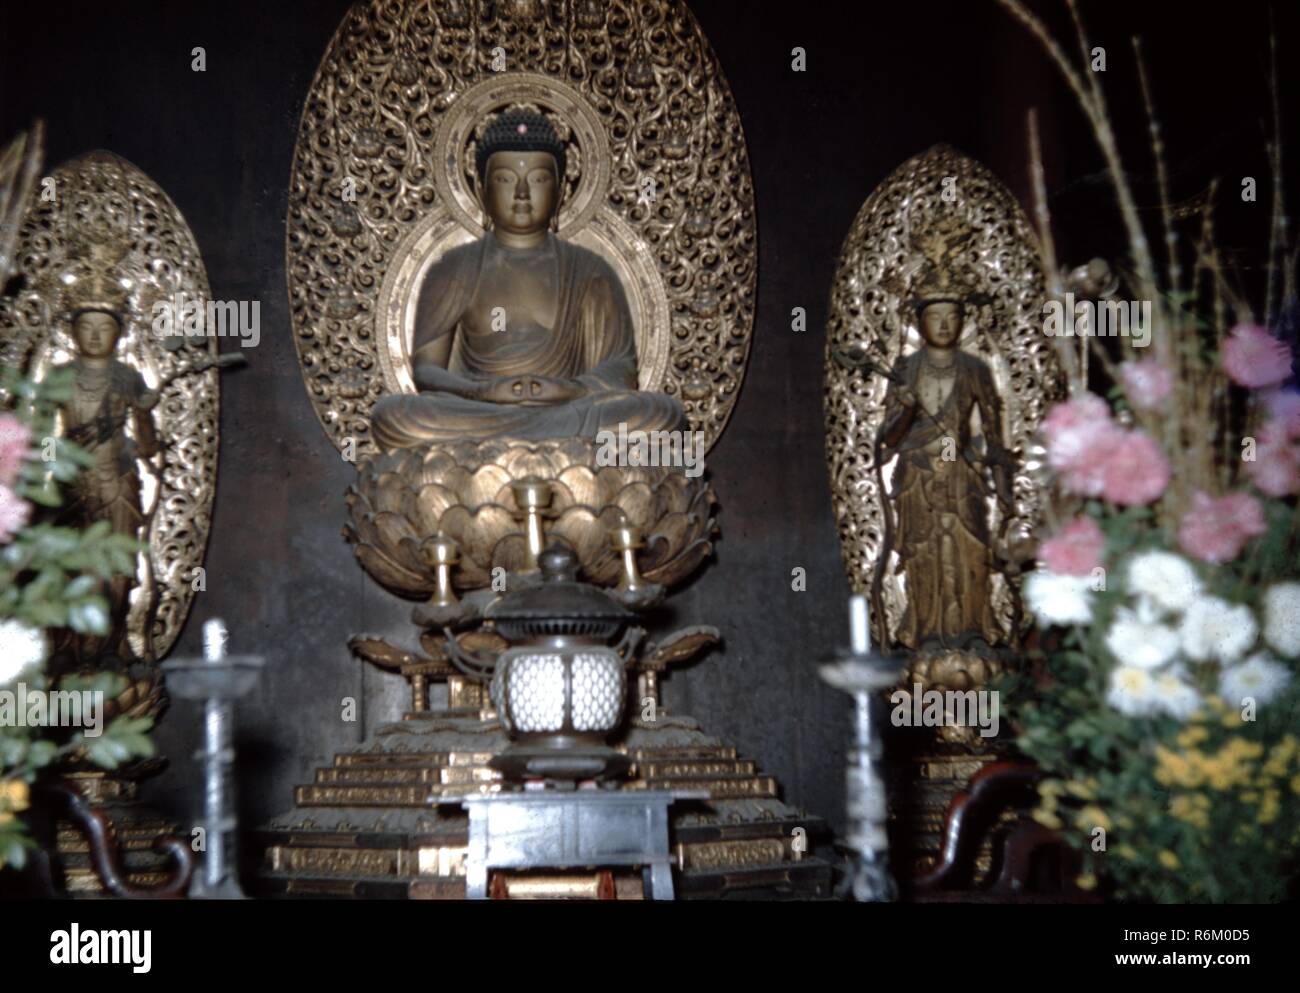 Photographie couleur, à partir d'un angle faible, montrant un bouddha finement sculpté et doré, assis sur une fleur de lotus, avec une mandorle en arrière-plan, et ses mains reposant ensemble dans un état méditatif mudra, flanqué de deux chiffres, chaque opérateur debout dans une mandorle, et avec des fleurs, des bougies, et/ou un encensoir visible dans l'avant-plan, probablement photographié dans un temple bouddhiste Japonais, au cours de la moitié du xxe siècle, 1965. () Banque D'Images